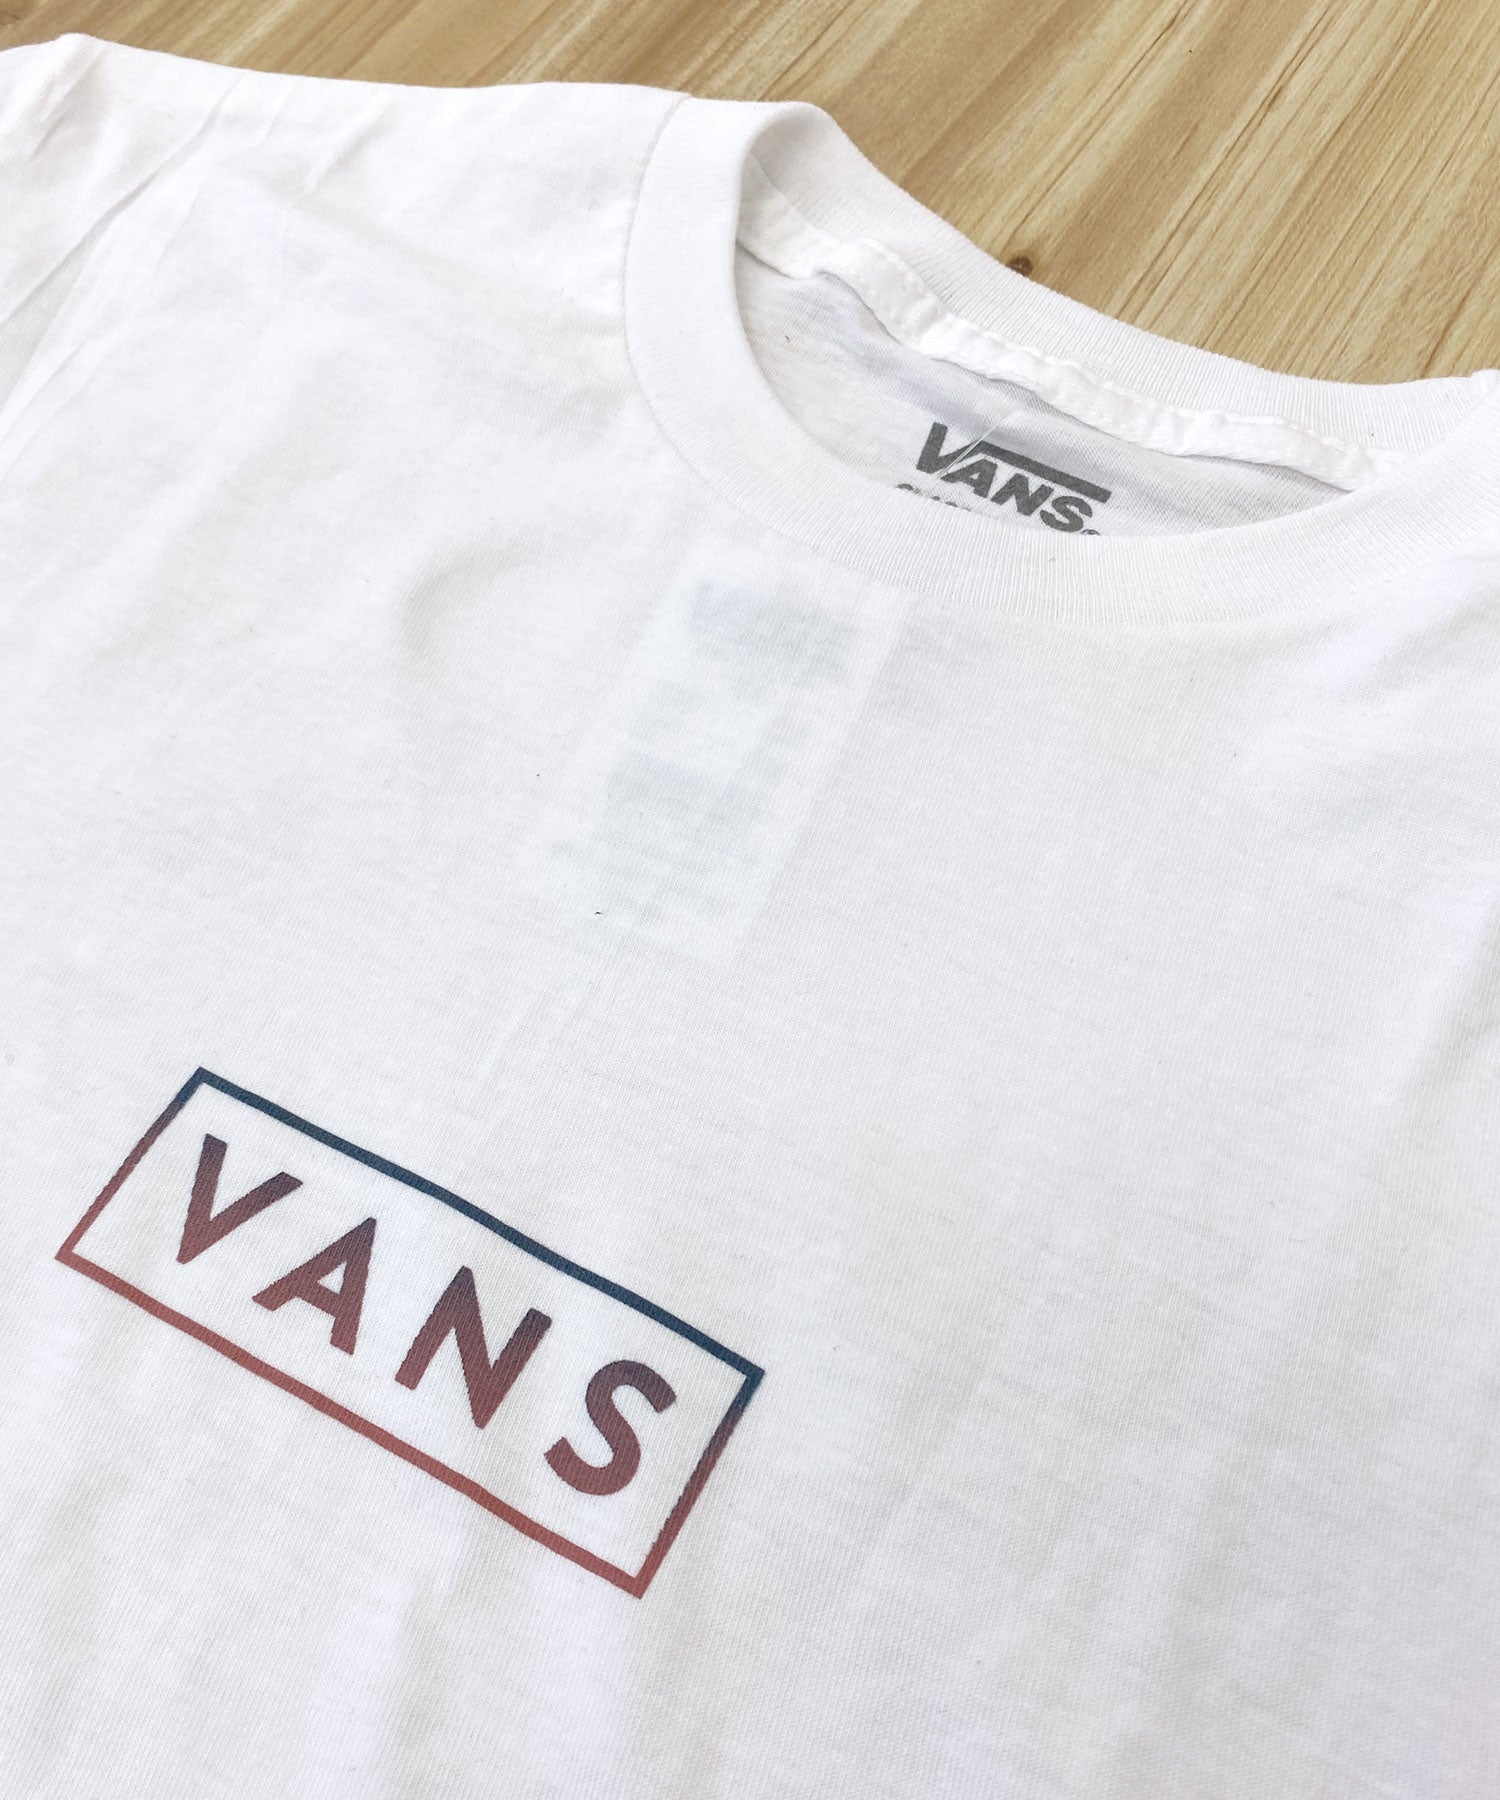 木村拓哉さん着用モデル】VANS BOX LOGO Tシャツ ① | kensysgas.com